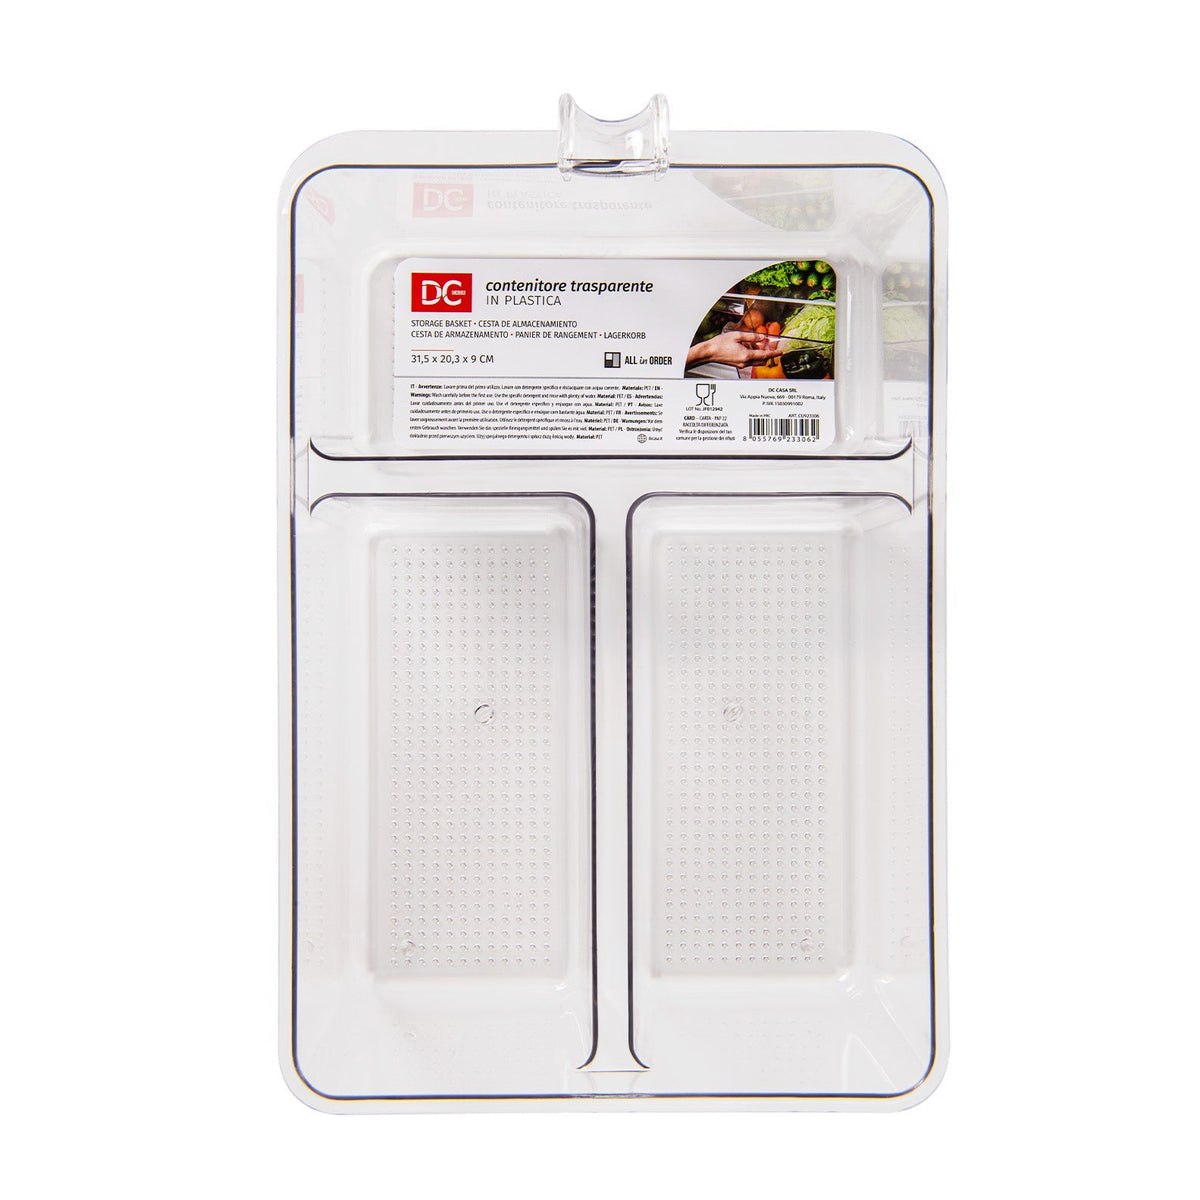 Priehľadný plastový nádoba v chladničke -31,5x20.3cm